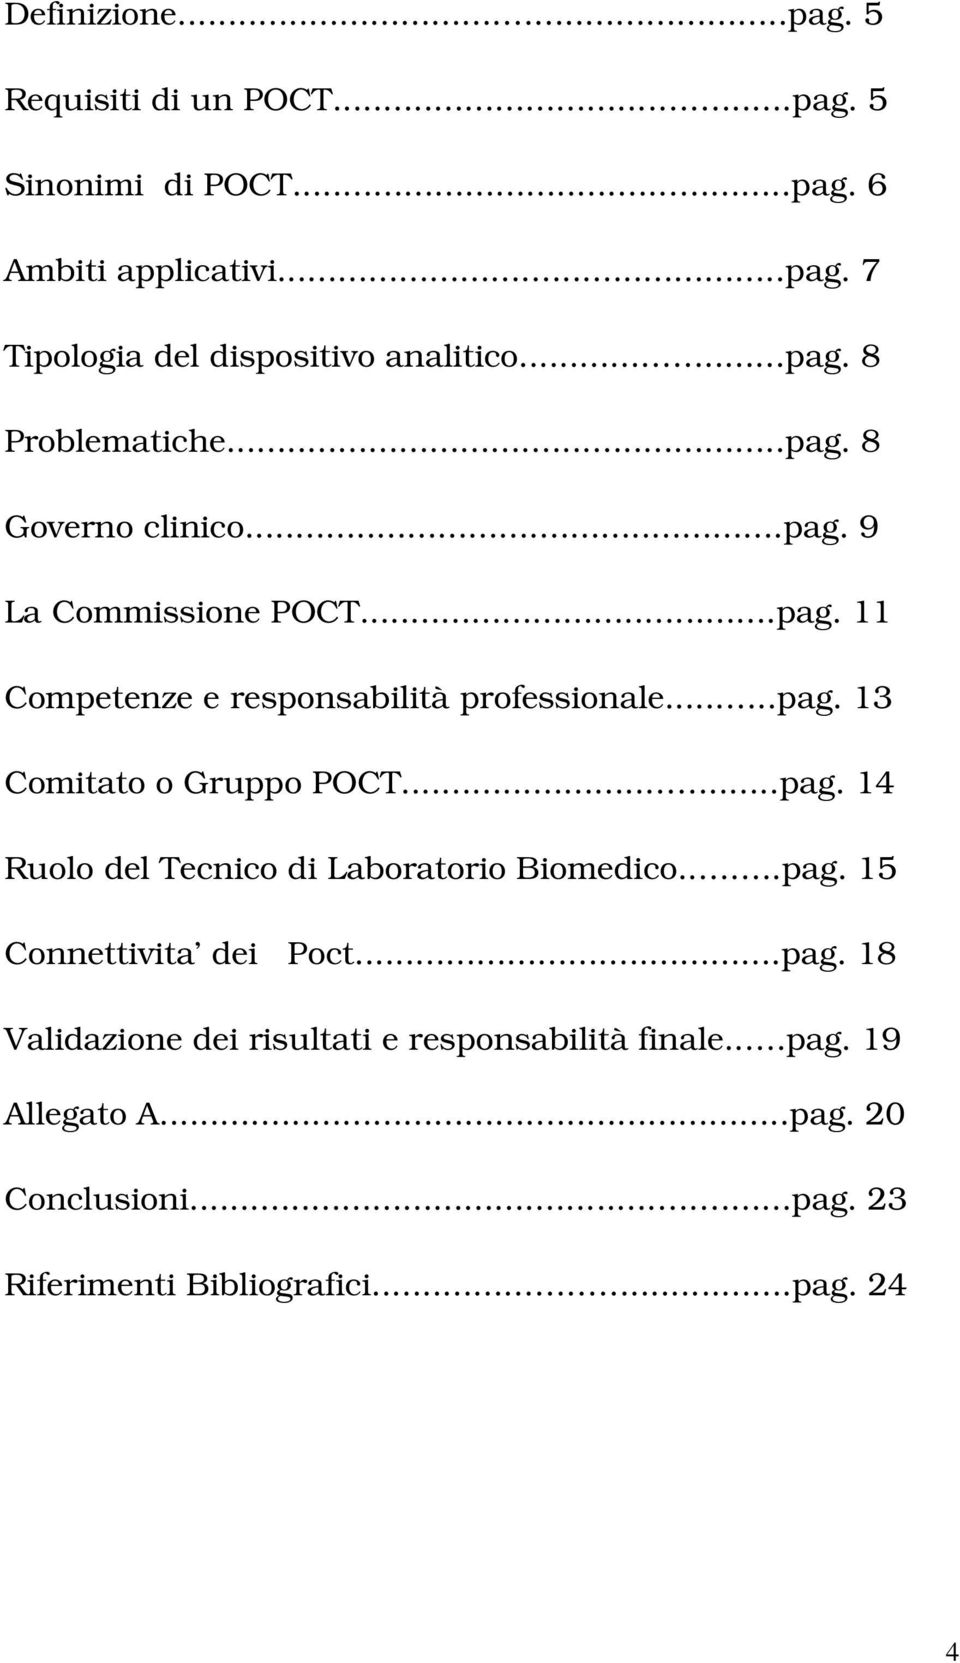 .....pag. 14 Ruolo del Tecnico di Laboratorio Biomedico....pag. 15 Connettivita dei Poct...pag. 18 Validazione dei risultati e responsabilità finale.